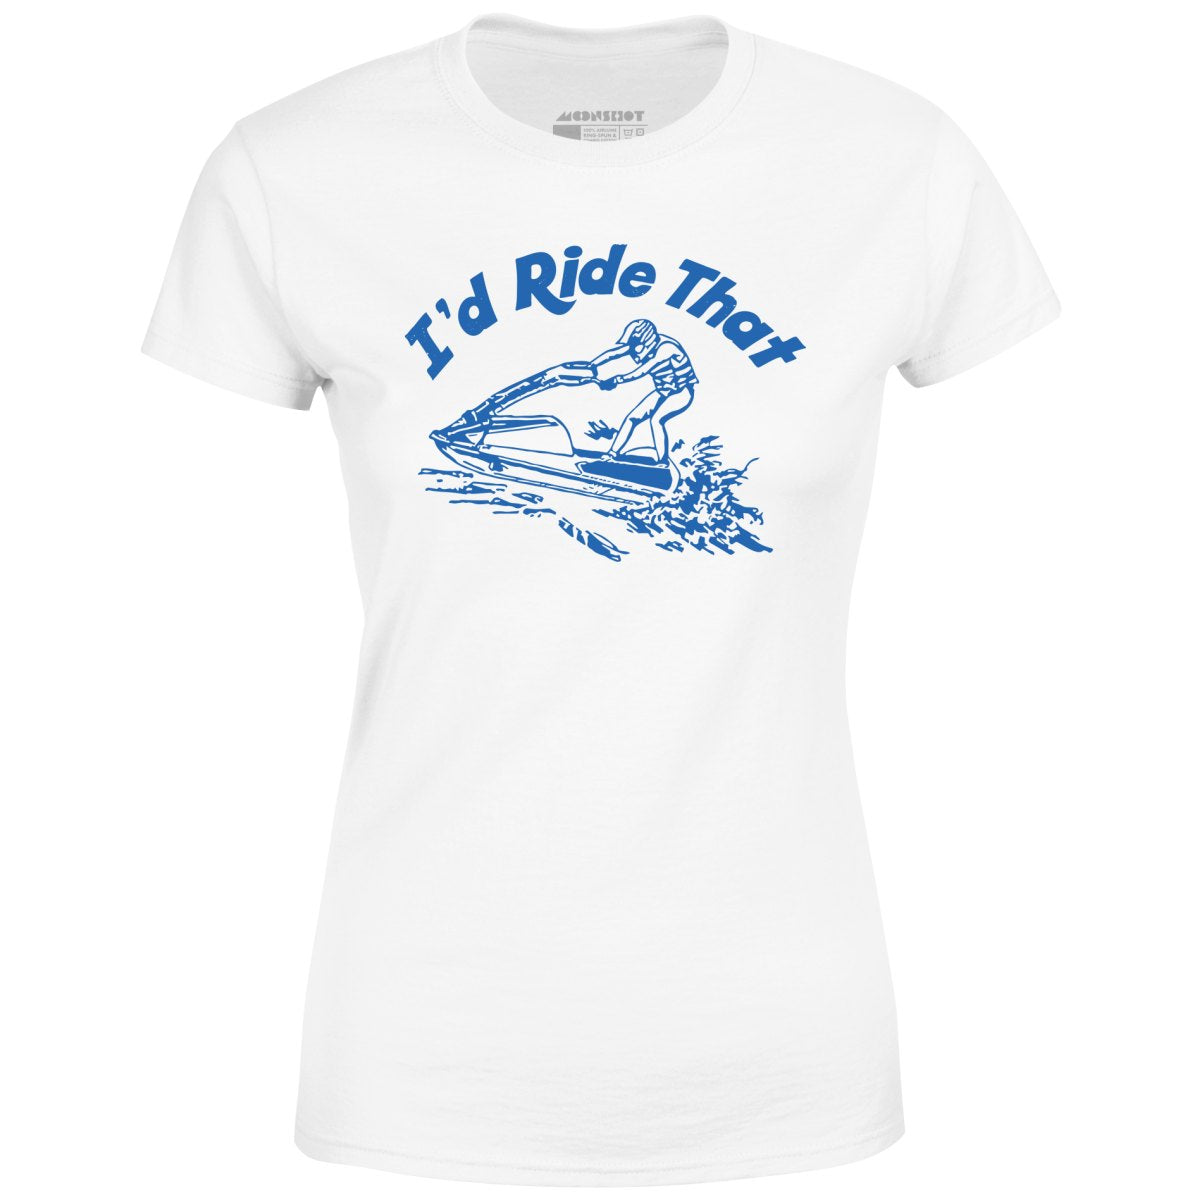 I'd Ride That - Women's T-Shirt